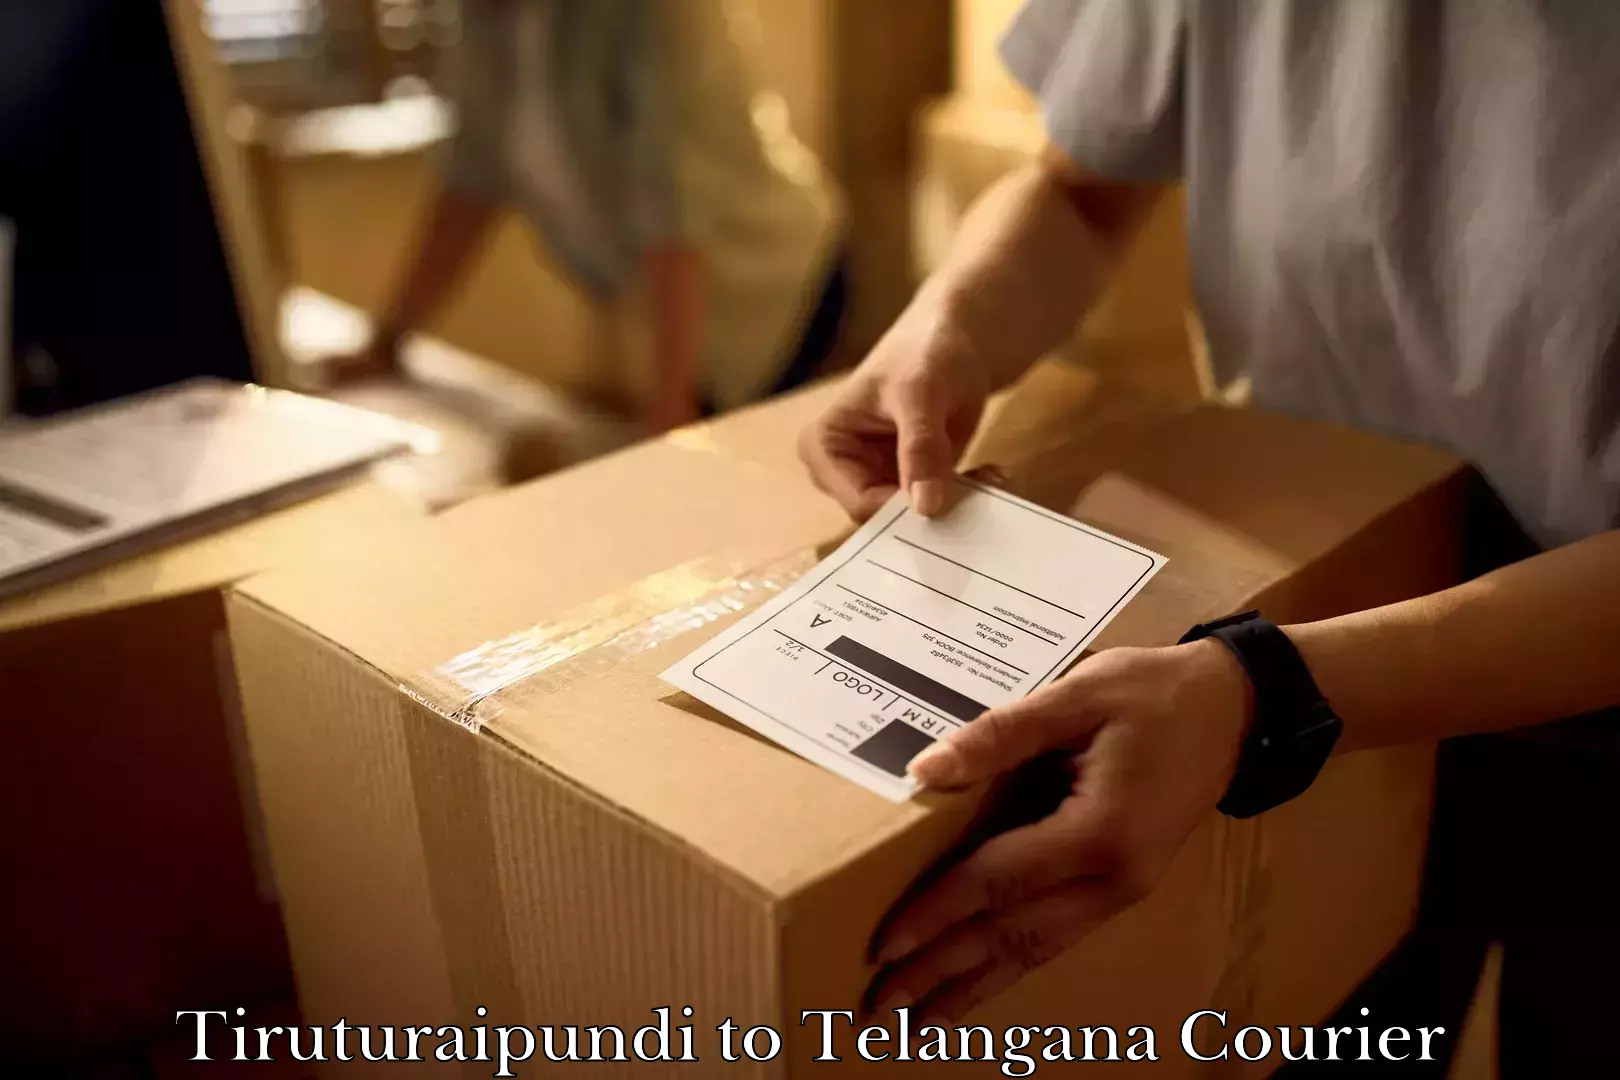 Furniture transport professionals Tiruturaipundi to Warangal